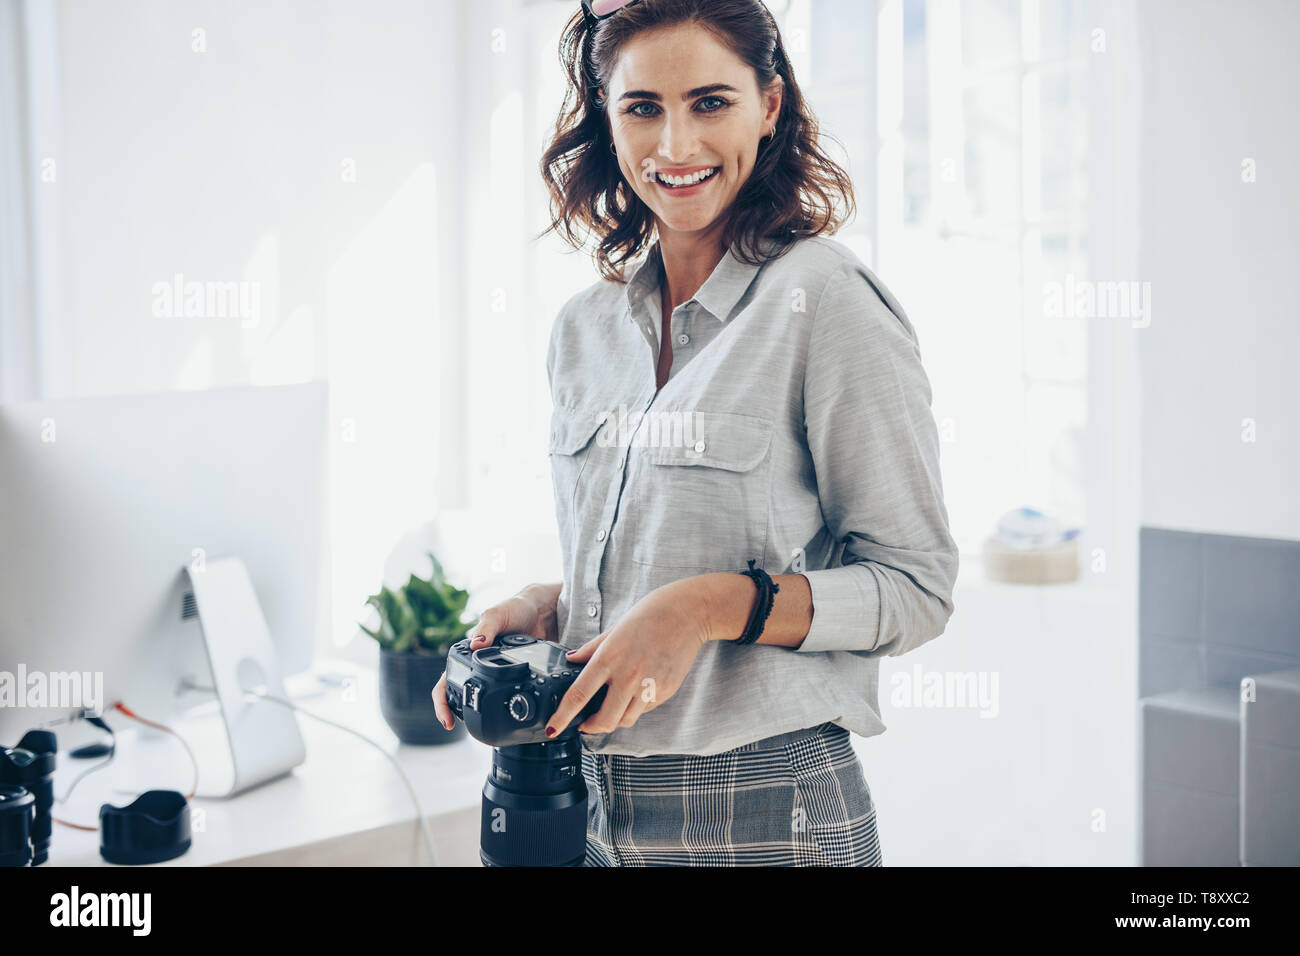 Certain femme photographe avec un appareil photo professionnel. Femme avec appareil photo reflex numérique dans le bureau. Banque D'Images